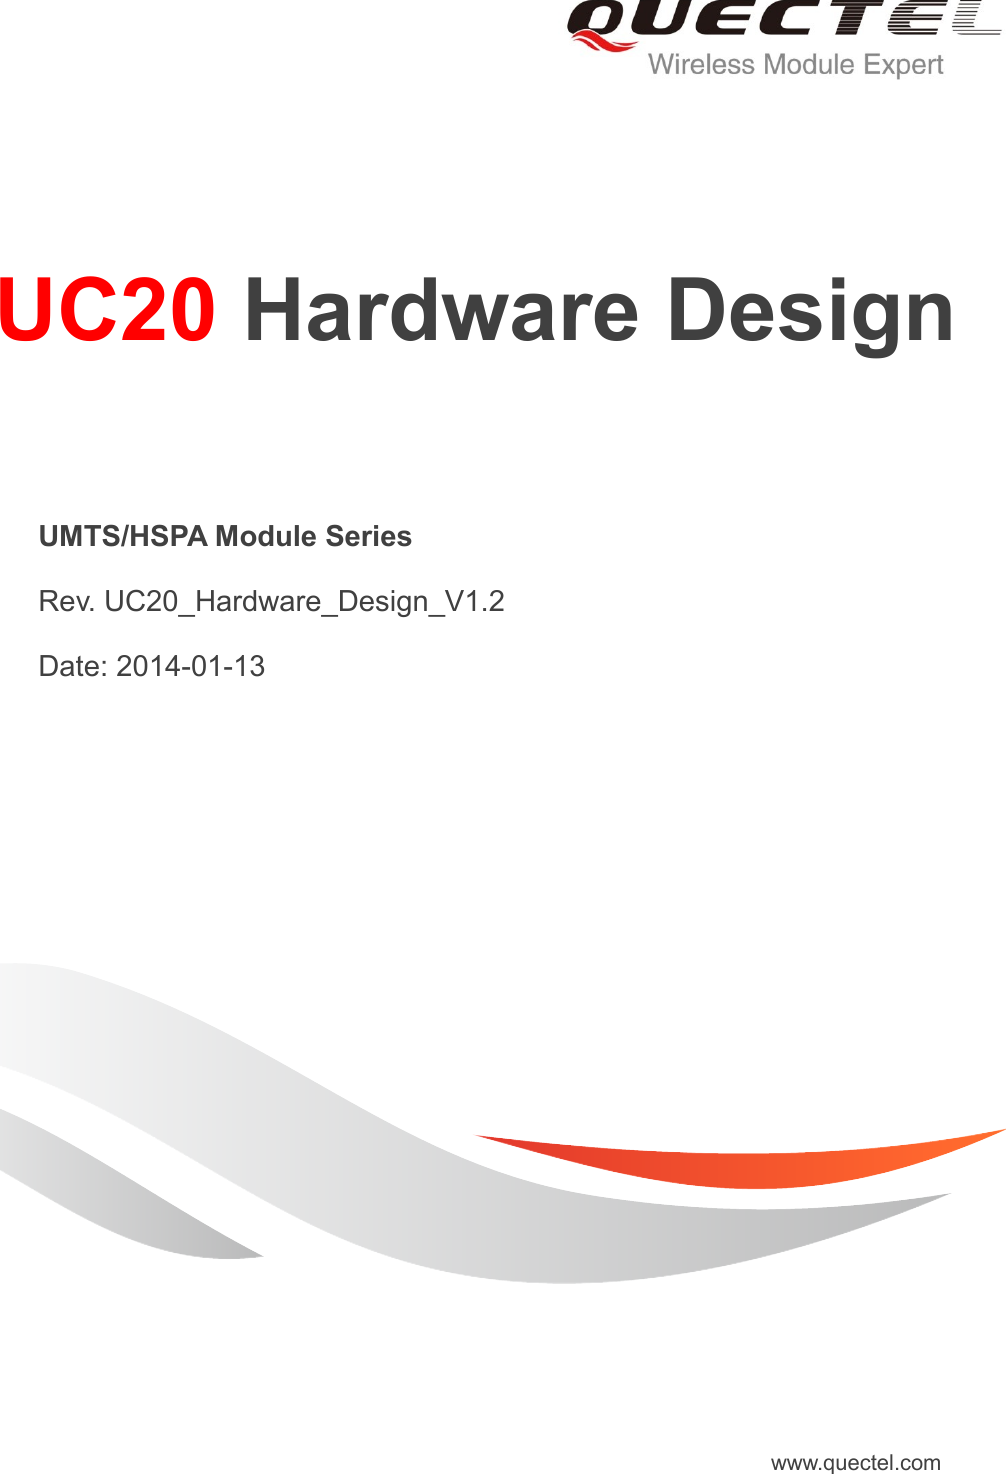     UC20 Hardware Design   UMTS/HSPA Module Series   Rev. UC20_Hardware_Design_V1.2   Date: 2014-01-13 www.quectel.com